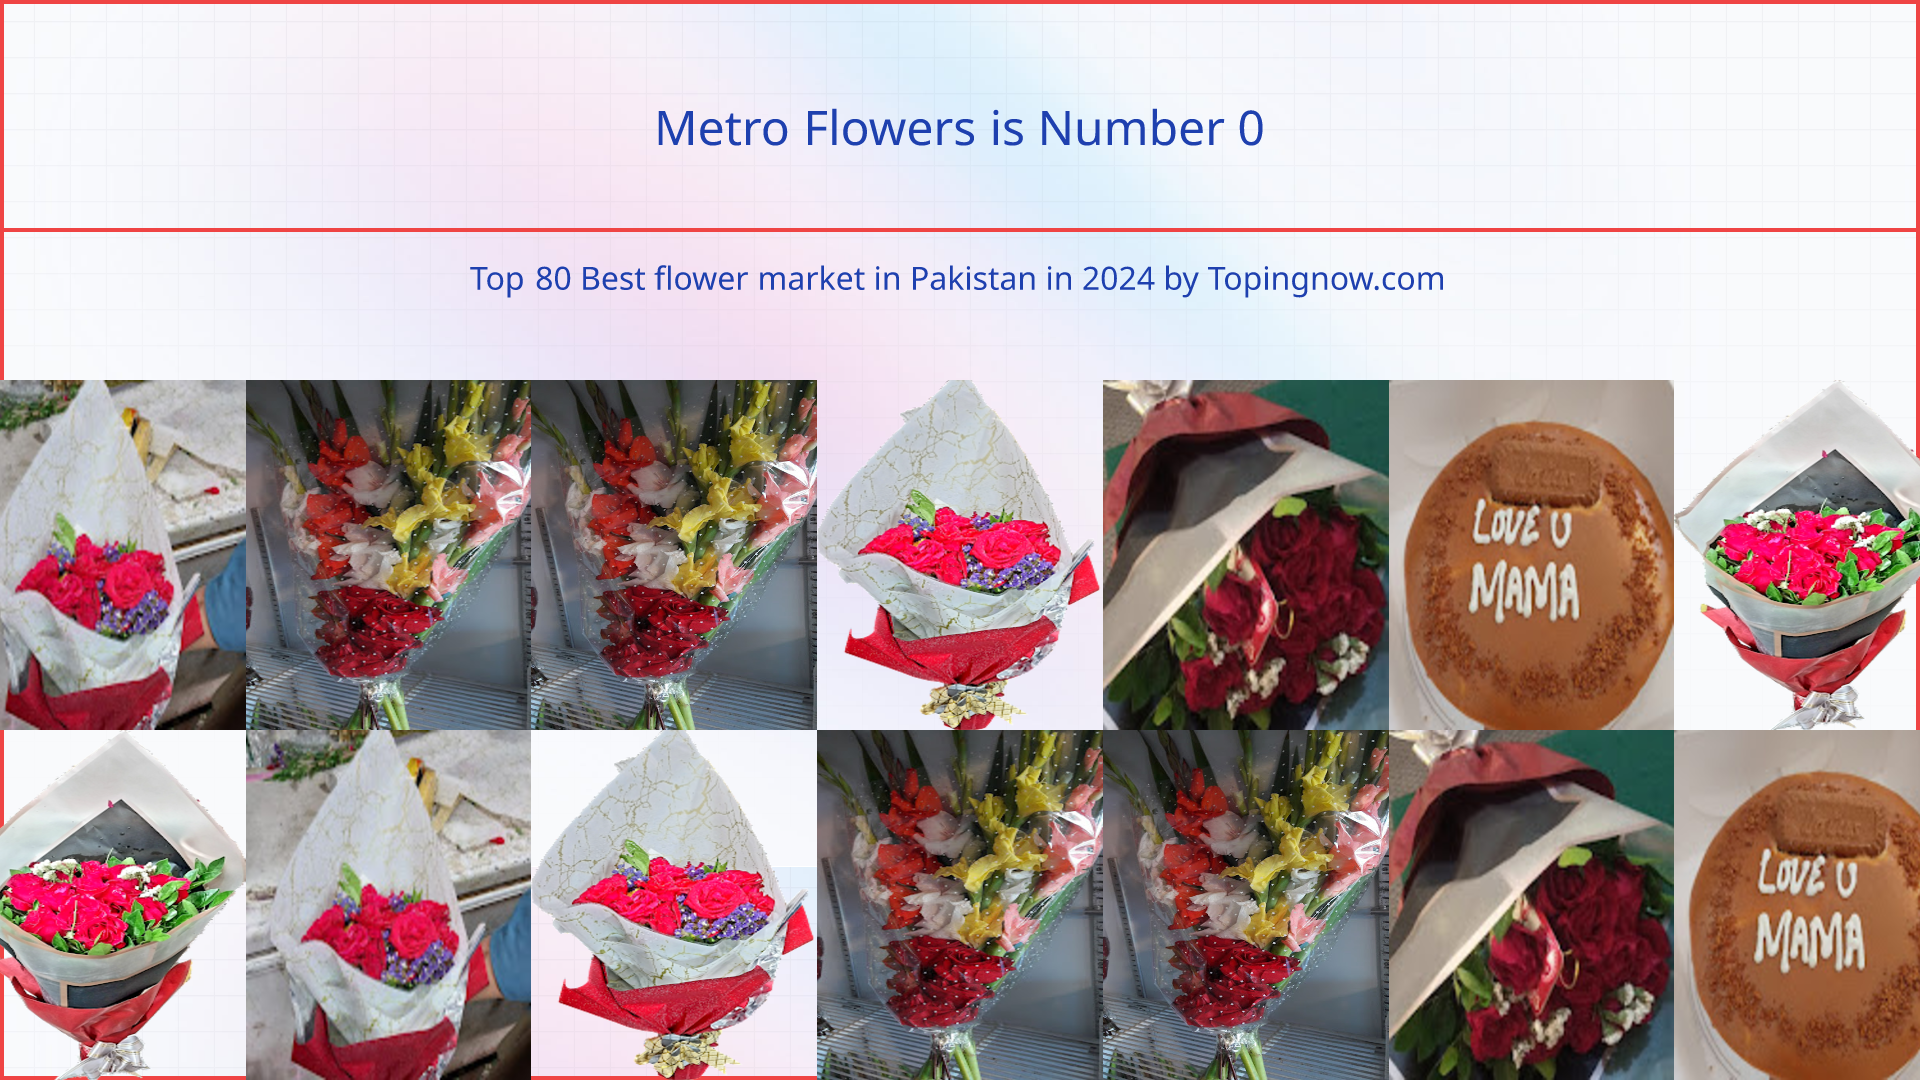 Metro Flowers: Top 80 Best flower market in Pakistan in 2024